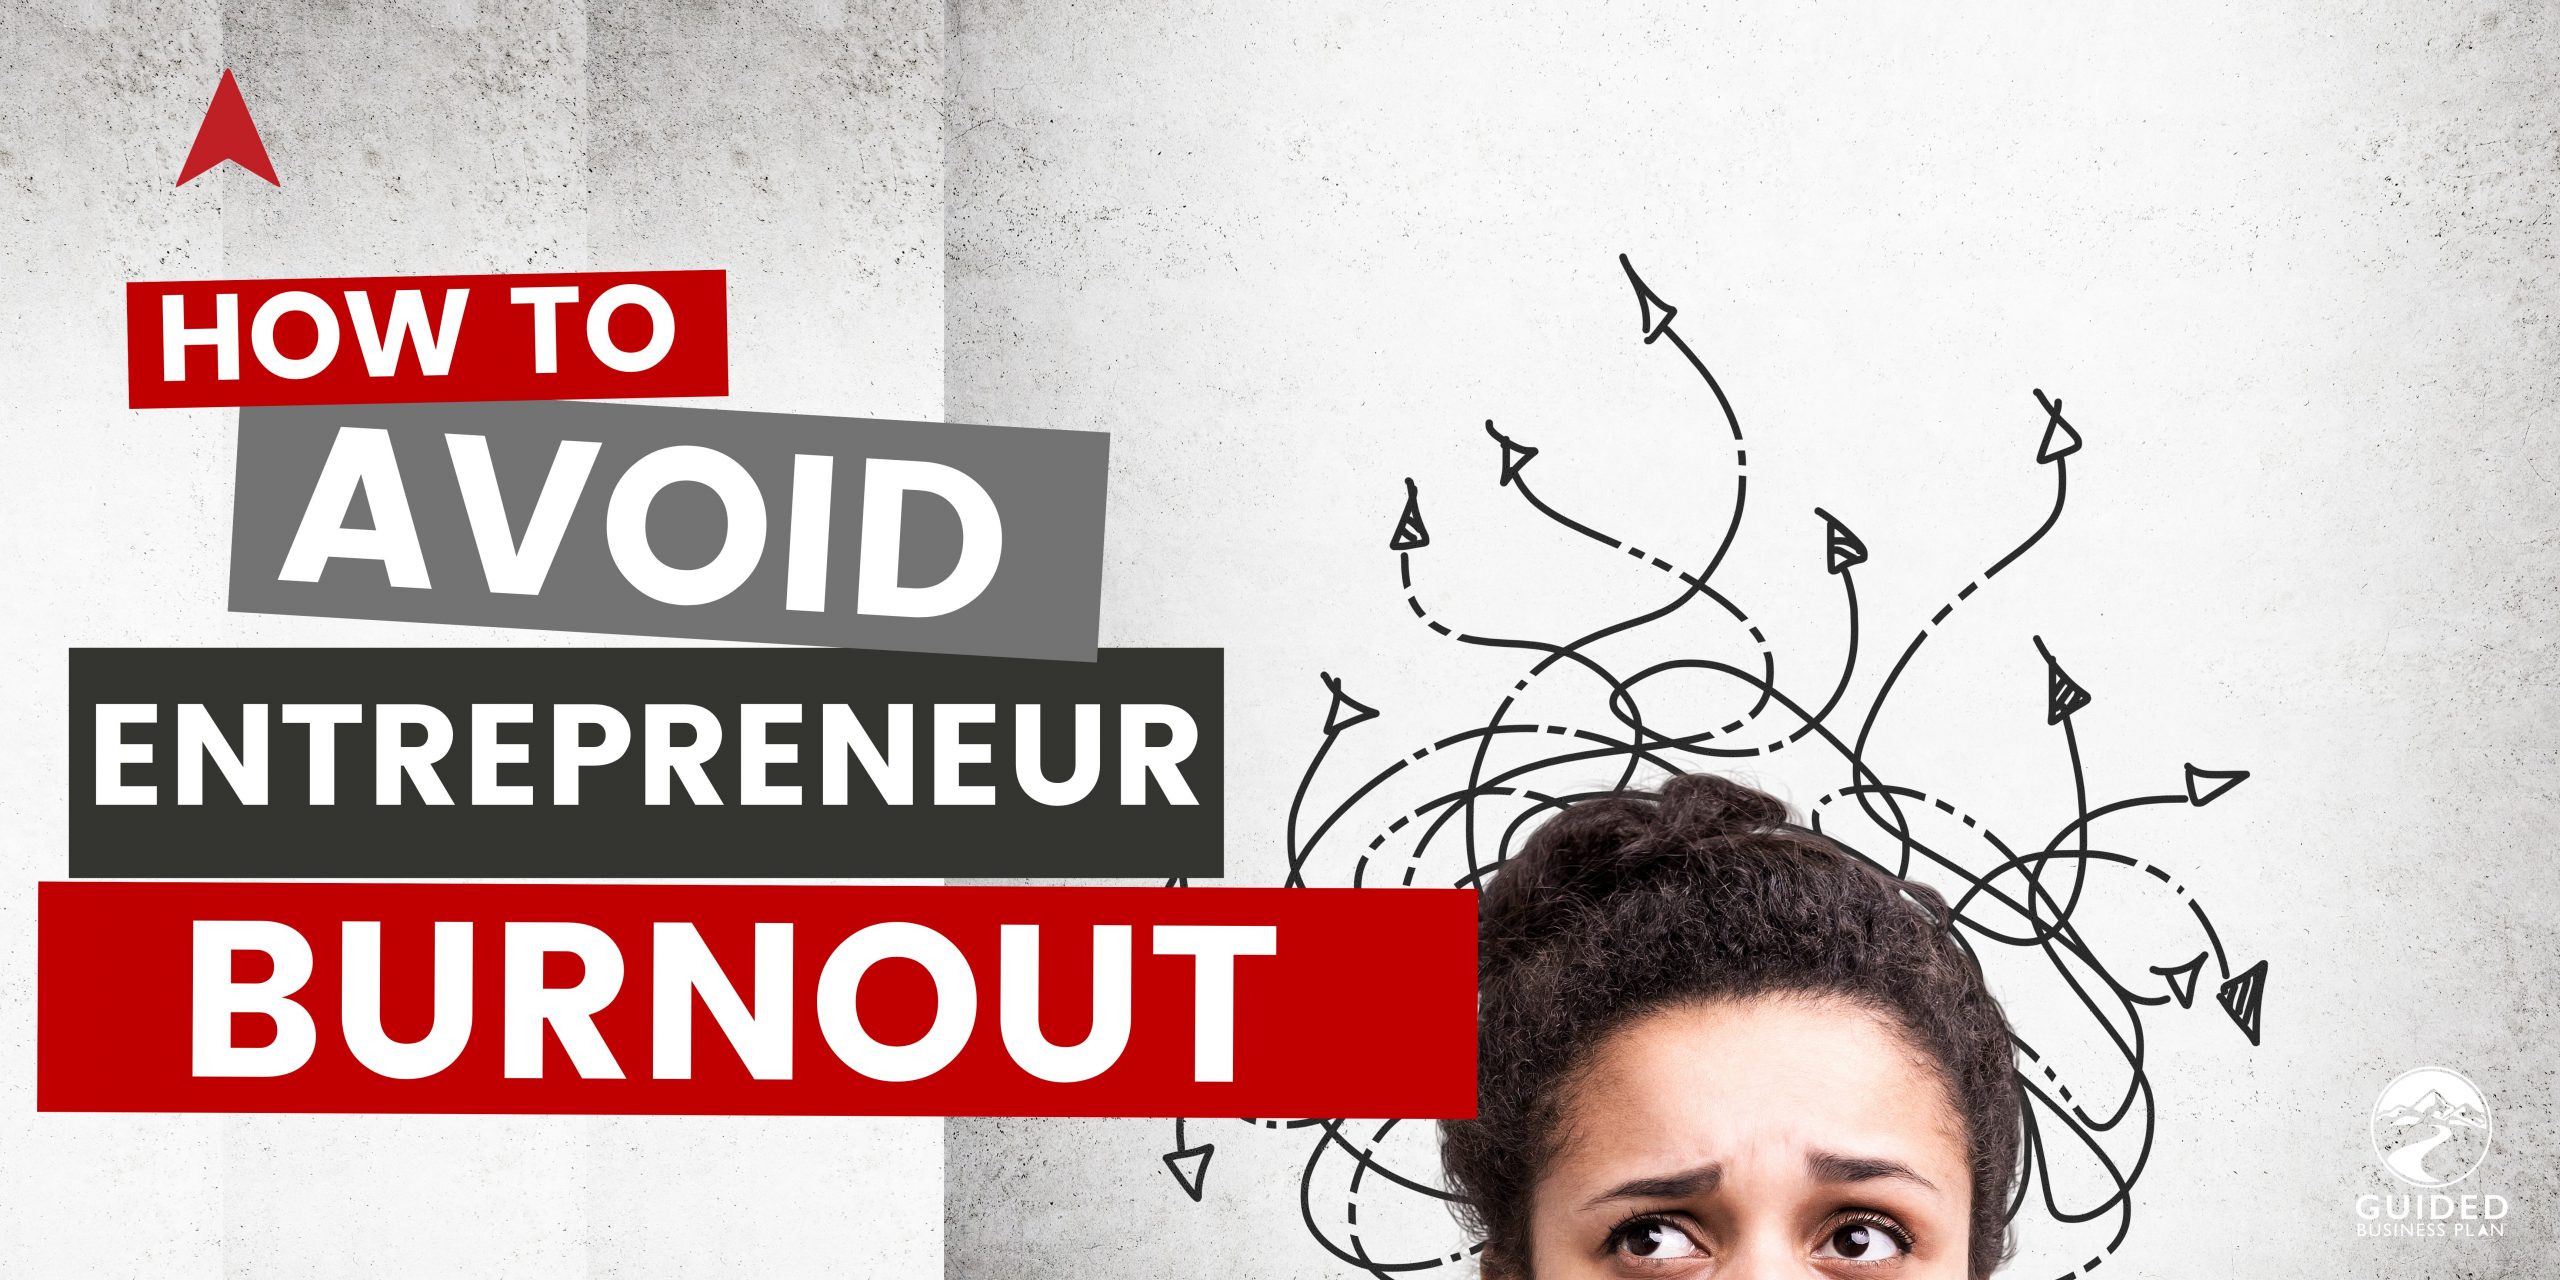 Entrepreneur Burnout